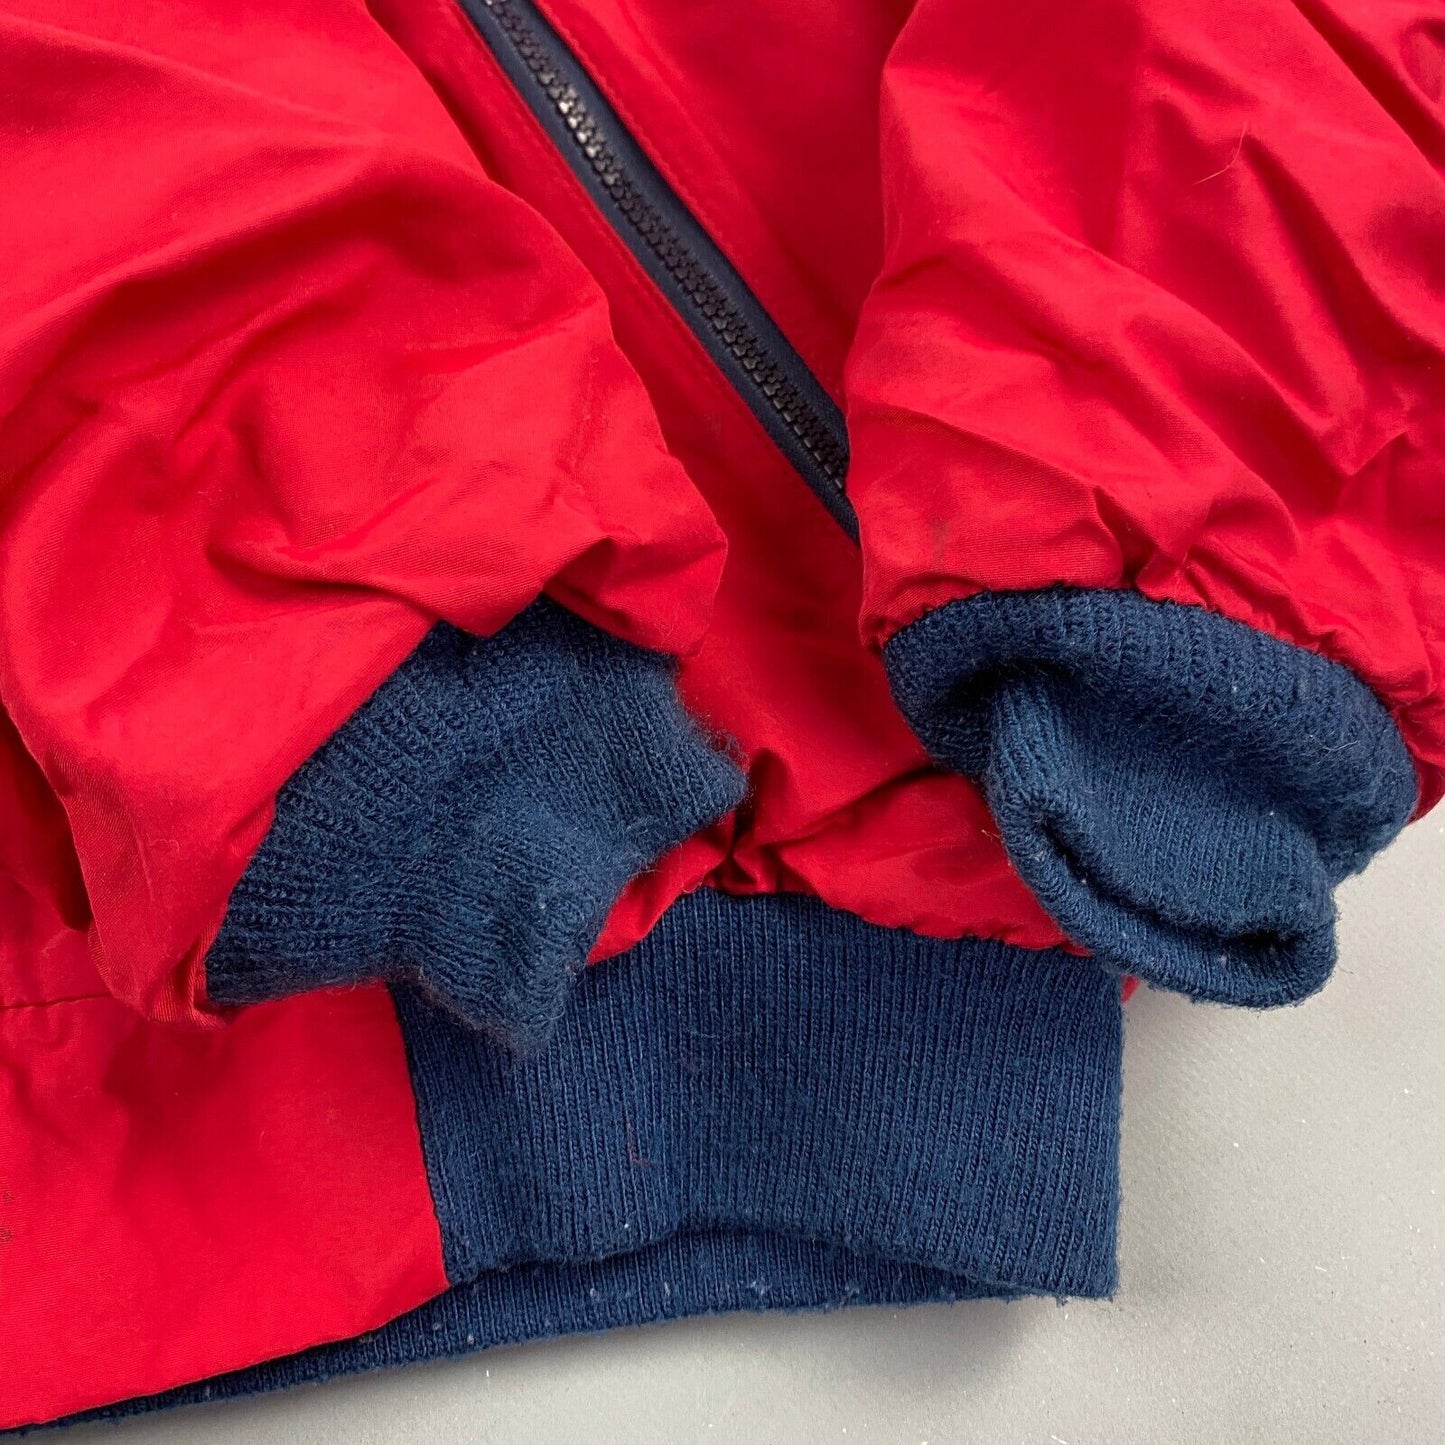 VINTAGE 90s L.L Bean Fleece Lined Warm Up Jacket sz Medium Tall Men